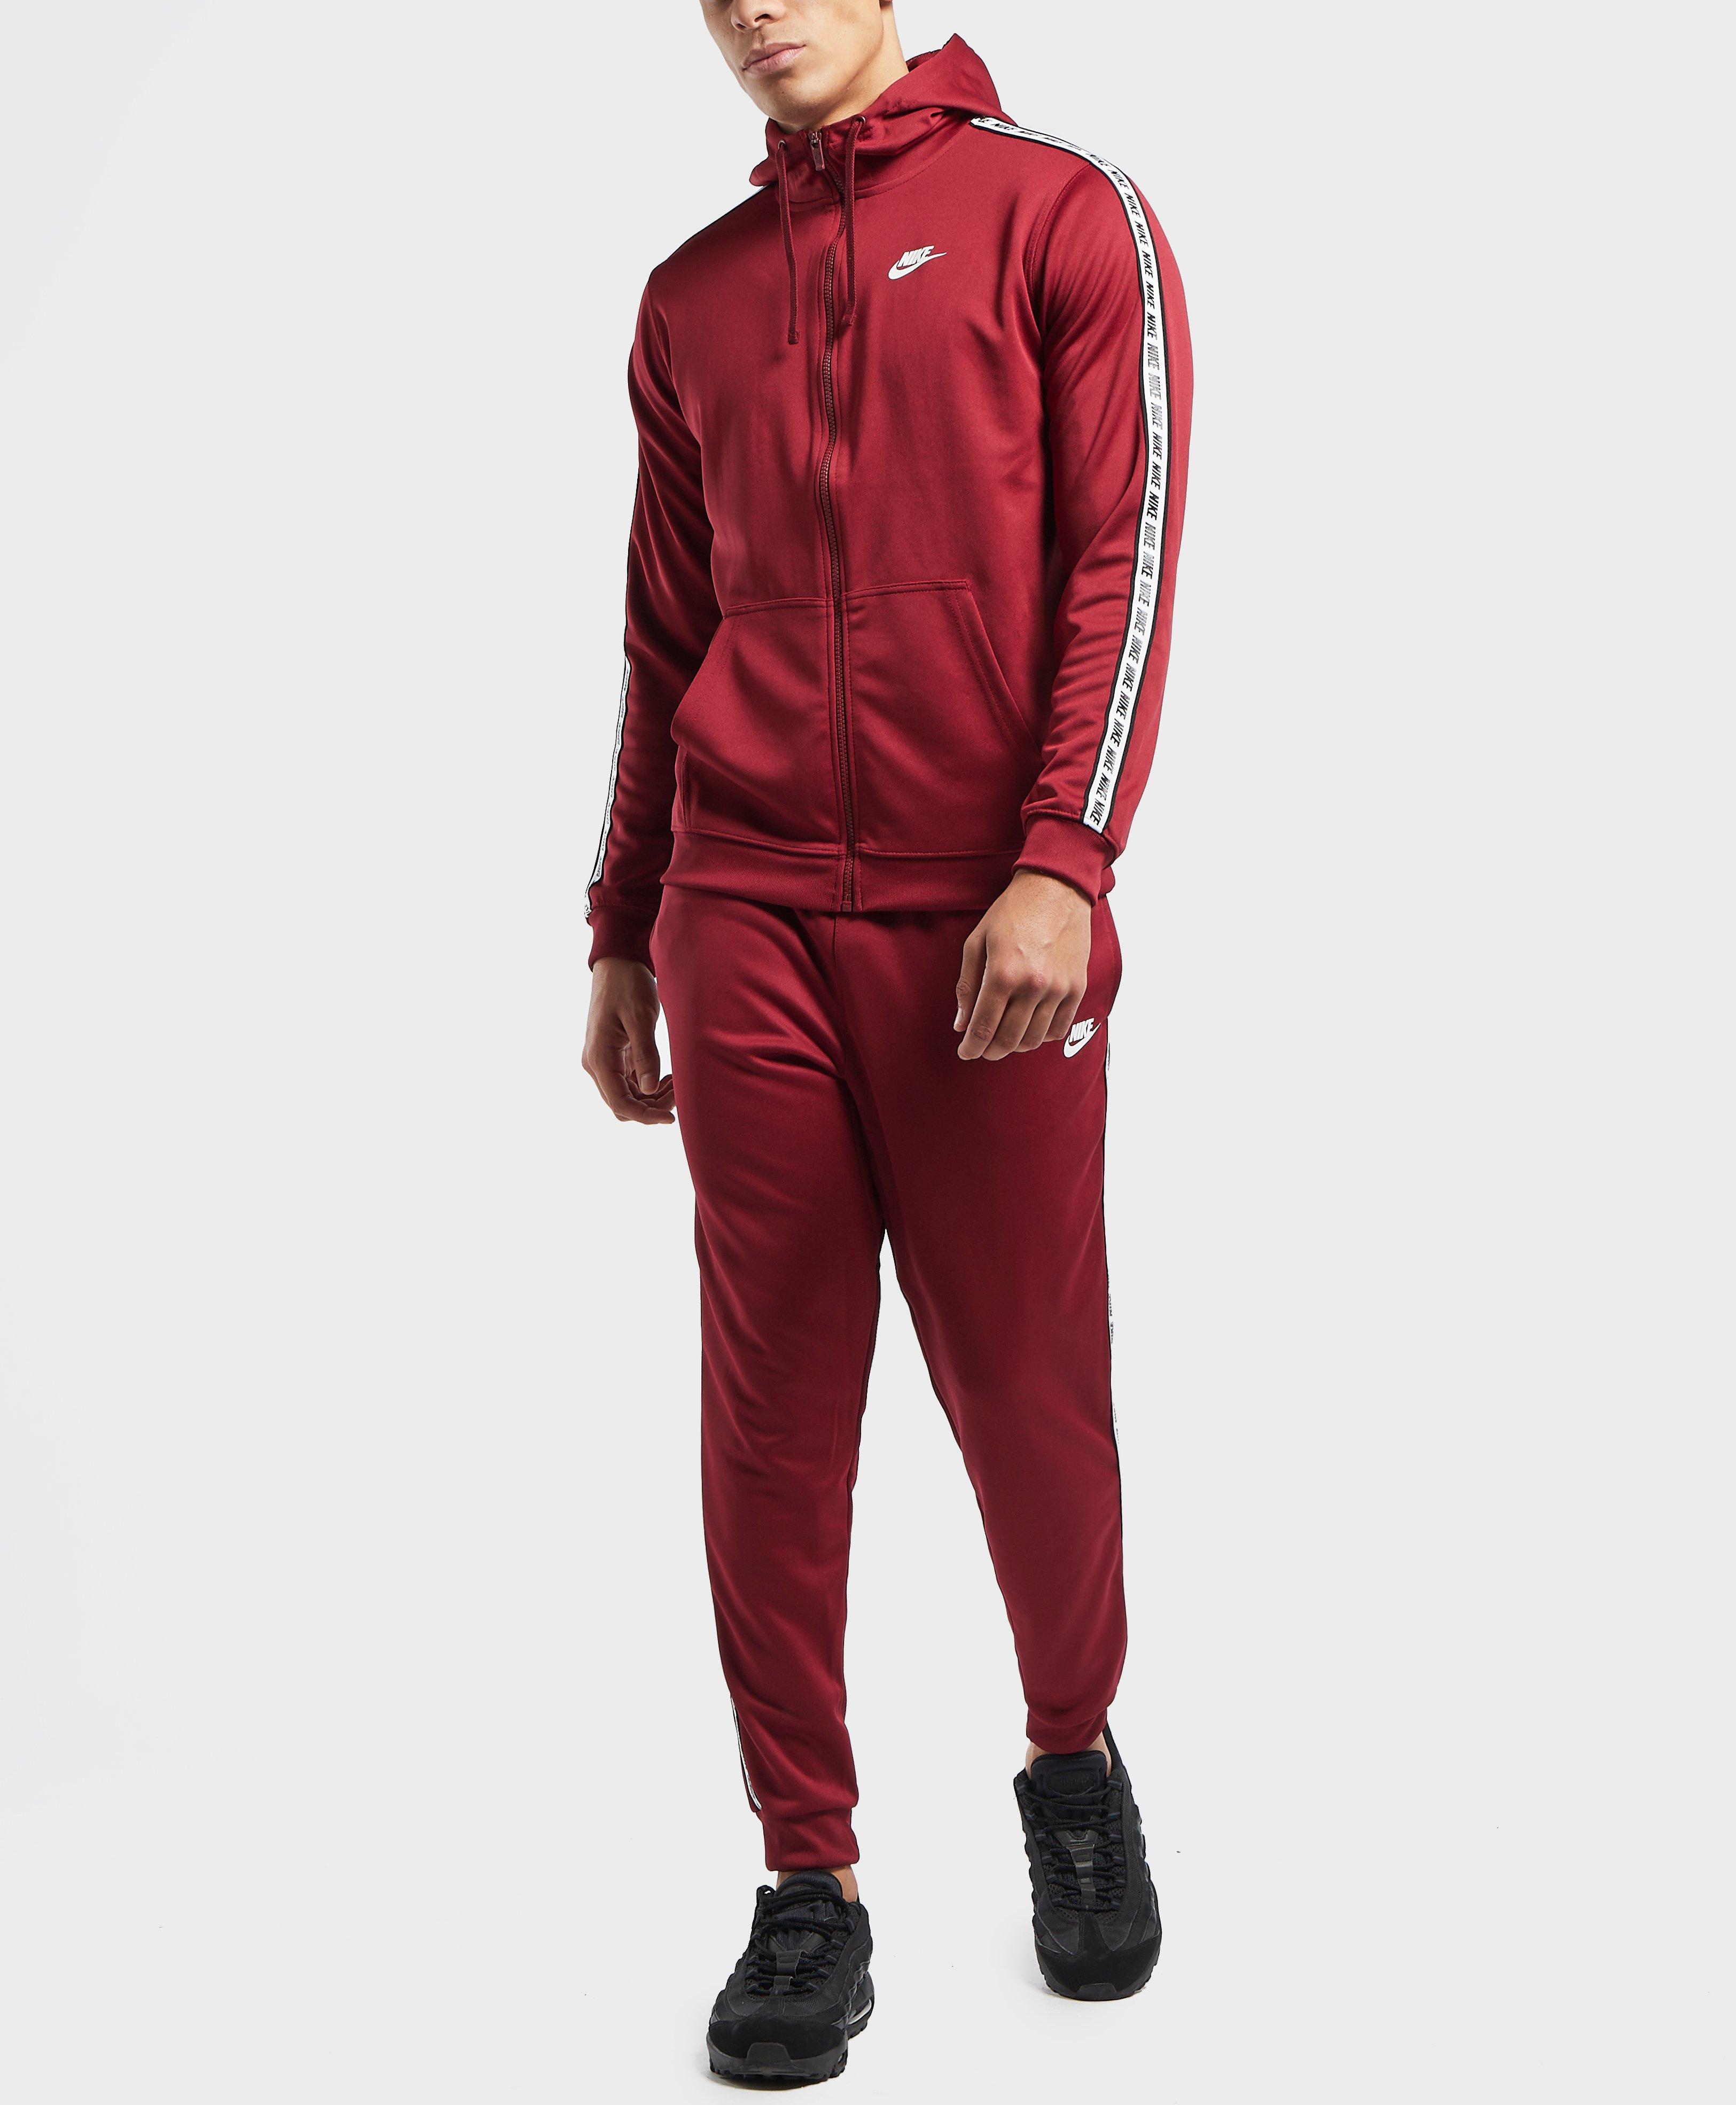 Nike Synthetic Gel Tape Full Zip Hoodie in Red for Men - Lyst